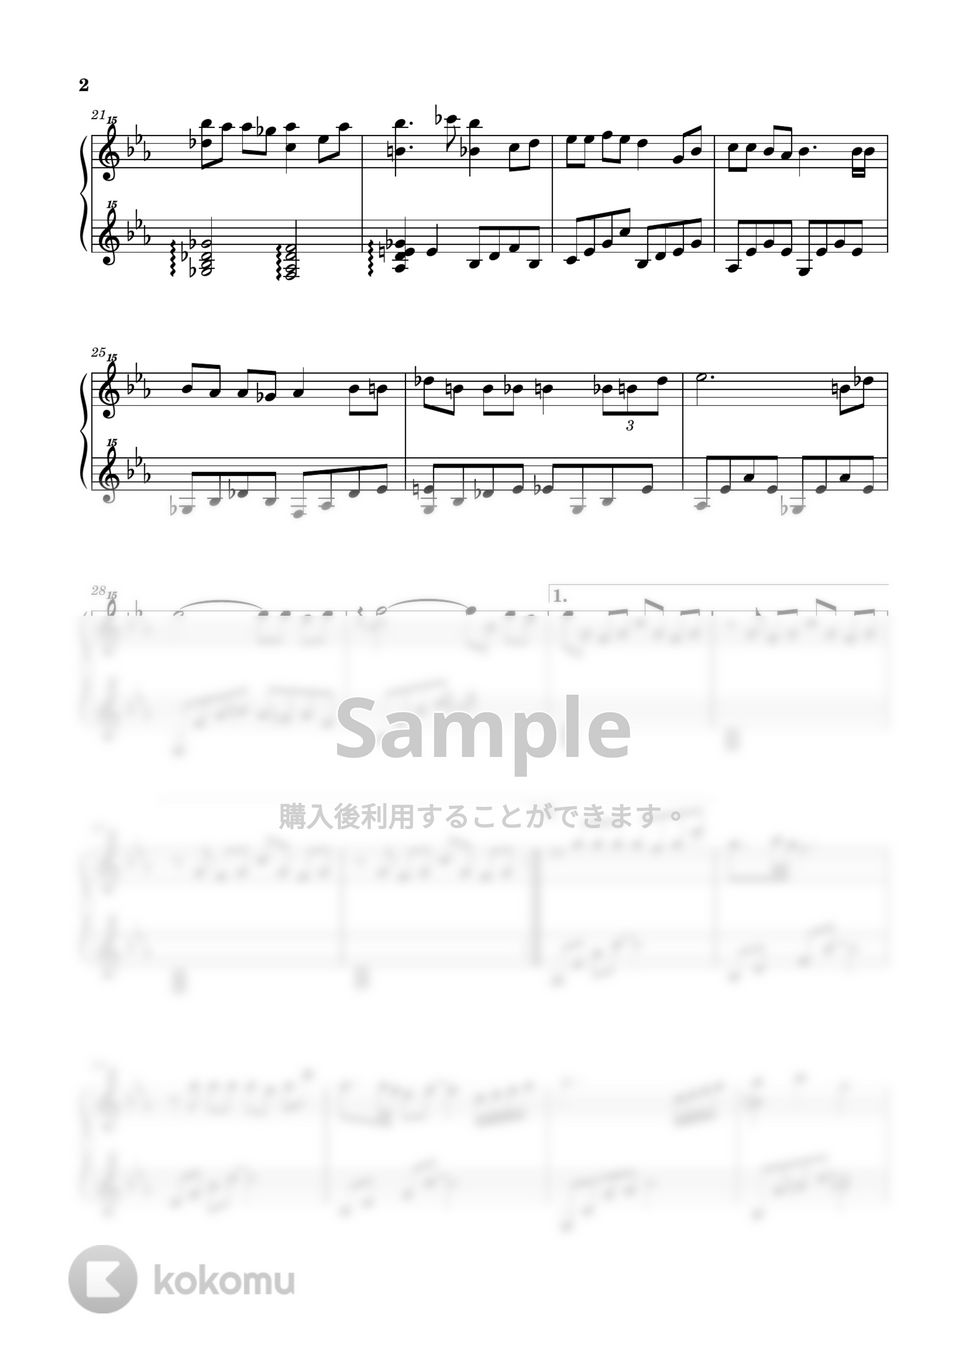 久石譲 - いのちの名前 (千と千尋の神隠し / トイピアノ / 32鍵盤) by 川西三裕